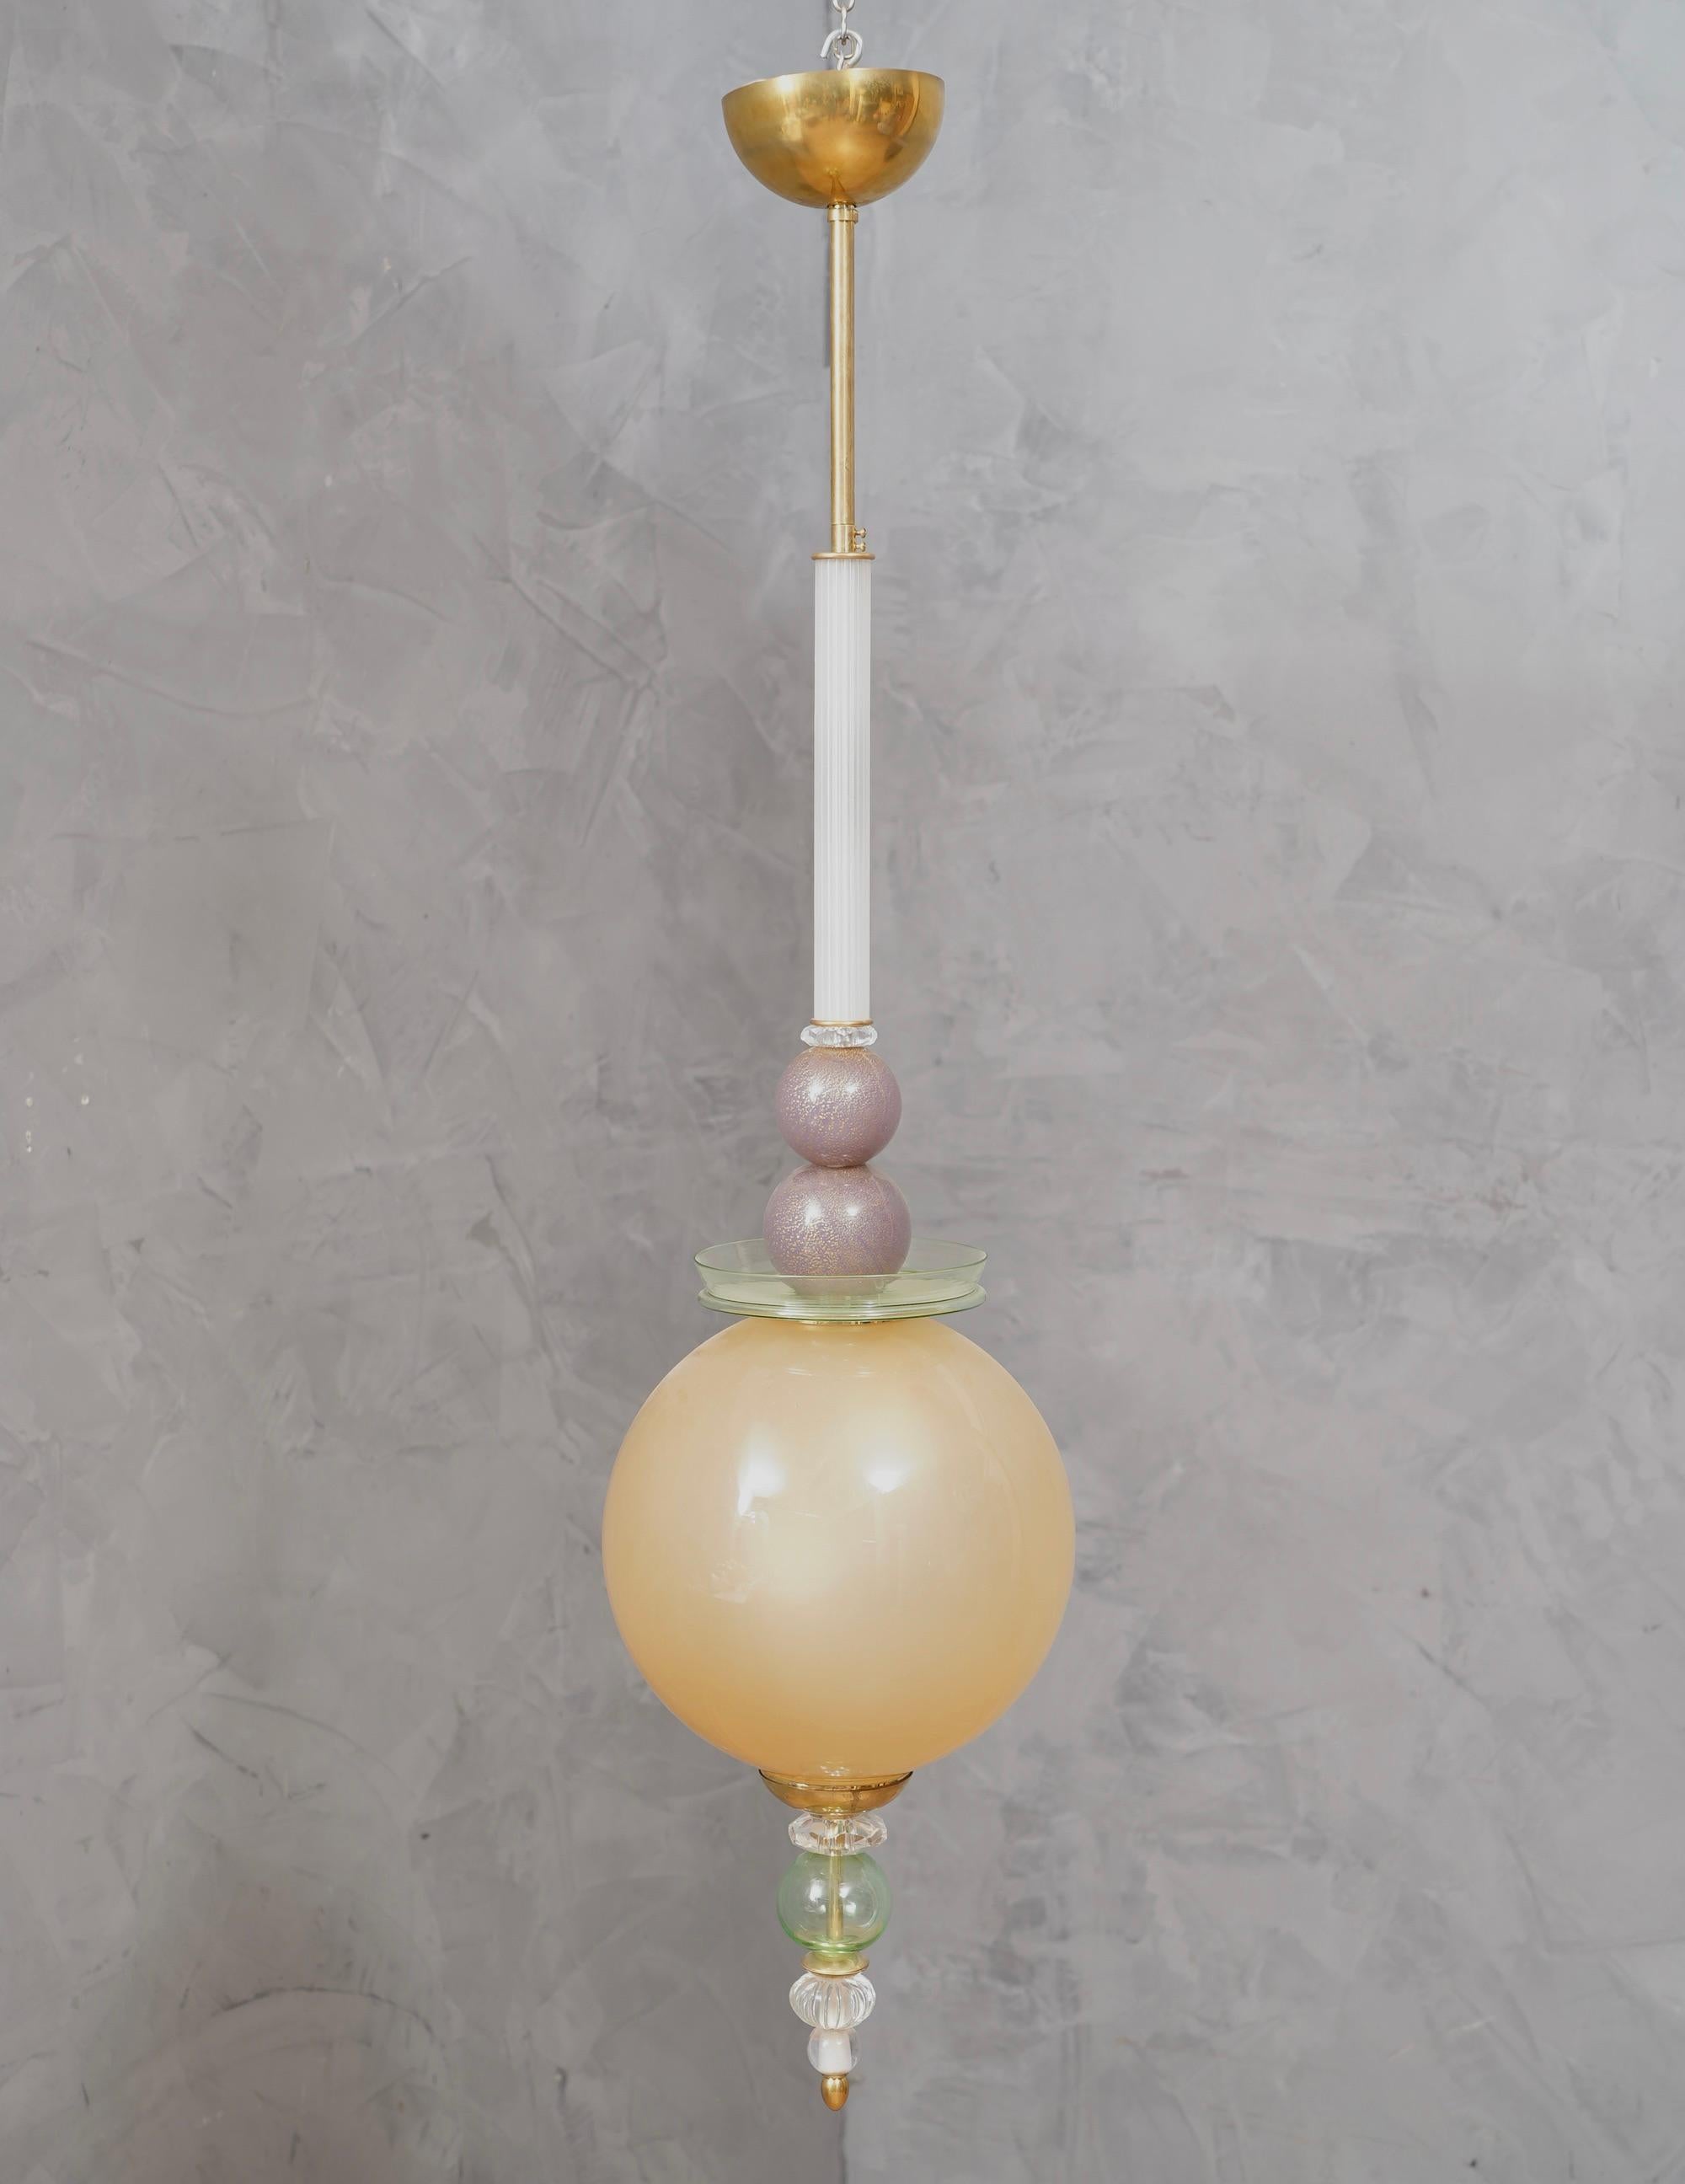 Ein kostbares Paar mundgeblasener Murano-Glaslaternen, deren Farben einzigartig sind und von Gold über Weiß und Grün bis hin zu Violett reichen. Sie sind sehr elegant und raffiniert, sie können an verschiedenen Stellen im Haus platziert werden, zum